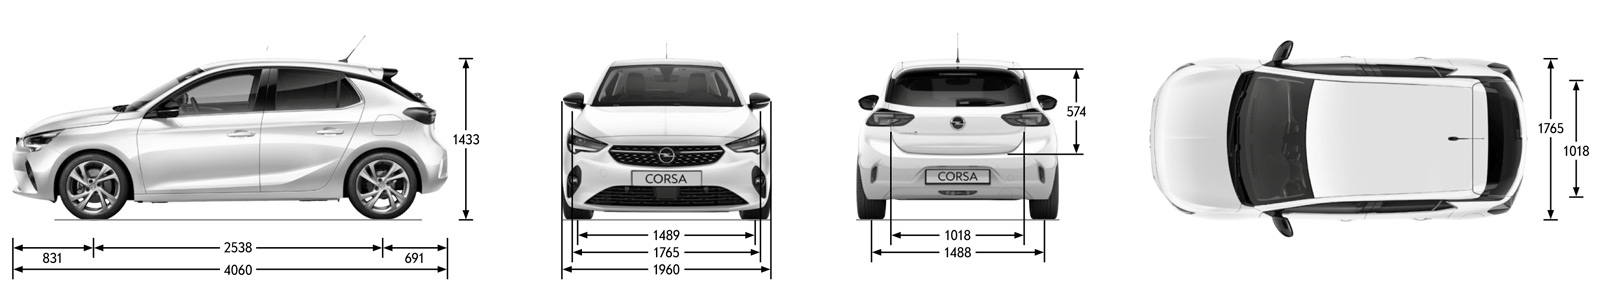 Opel Corsa F wymiary nadwozia